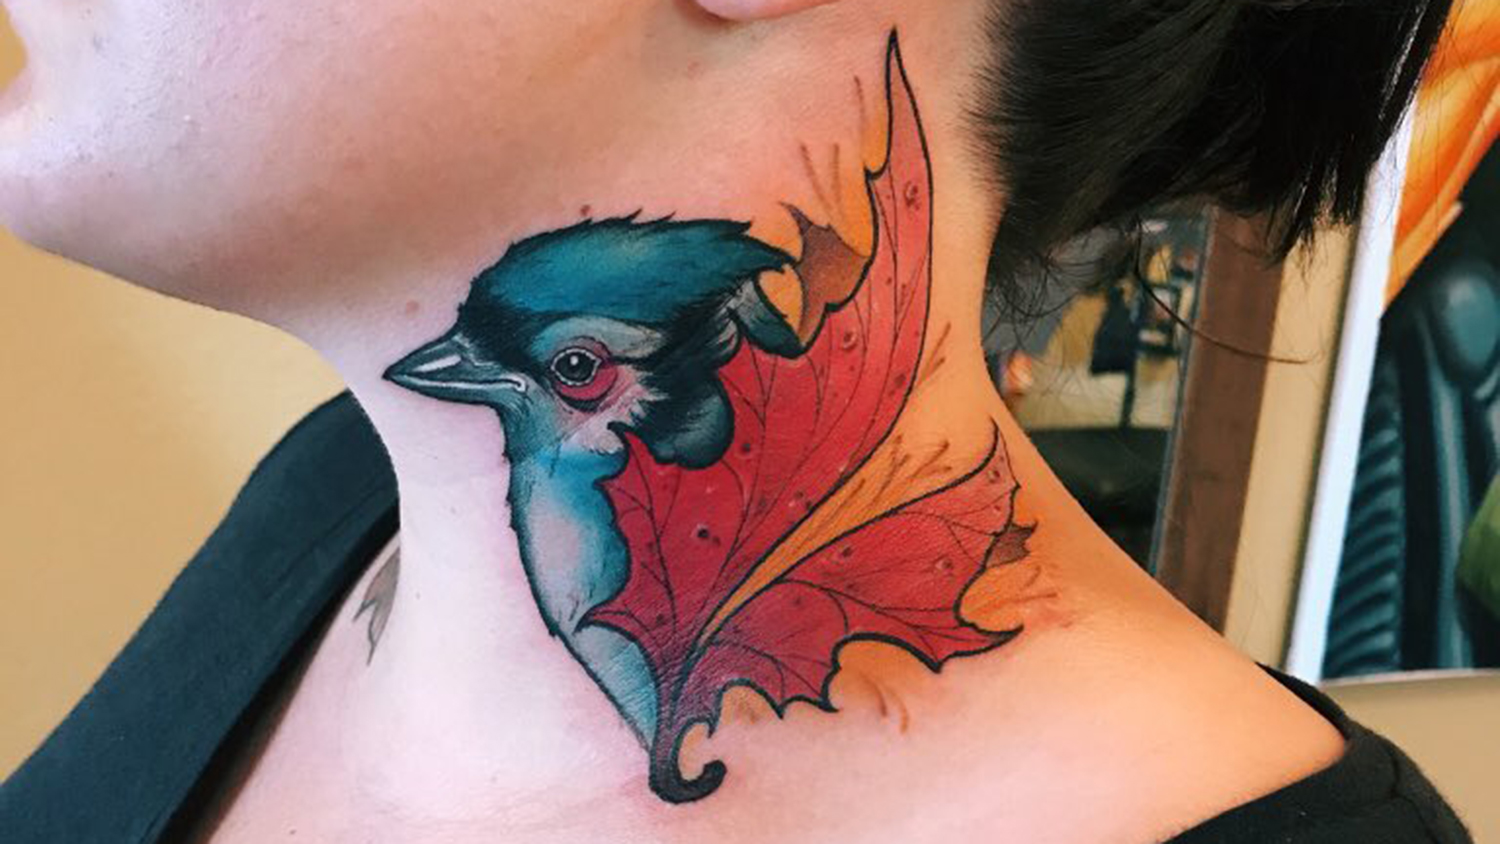 X 上的 prince tattooss：「#Girls neck tattoo Bird 🐦 #tattoo designs #Flying birds  tattoo #princetattoostudioinraipur #raipurtattooartist  https://t.co/QaFKAYQedu」 / X